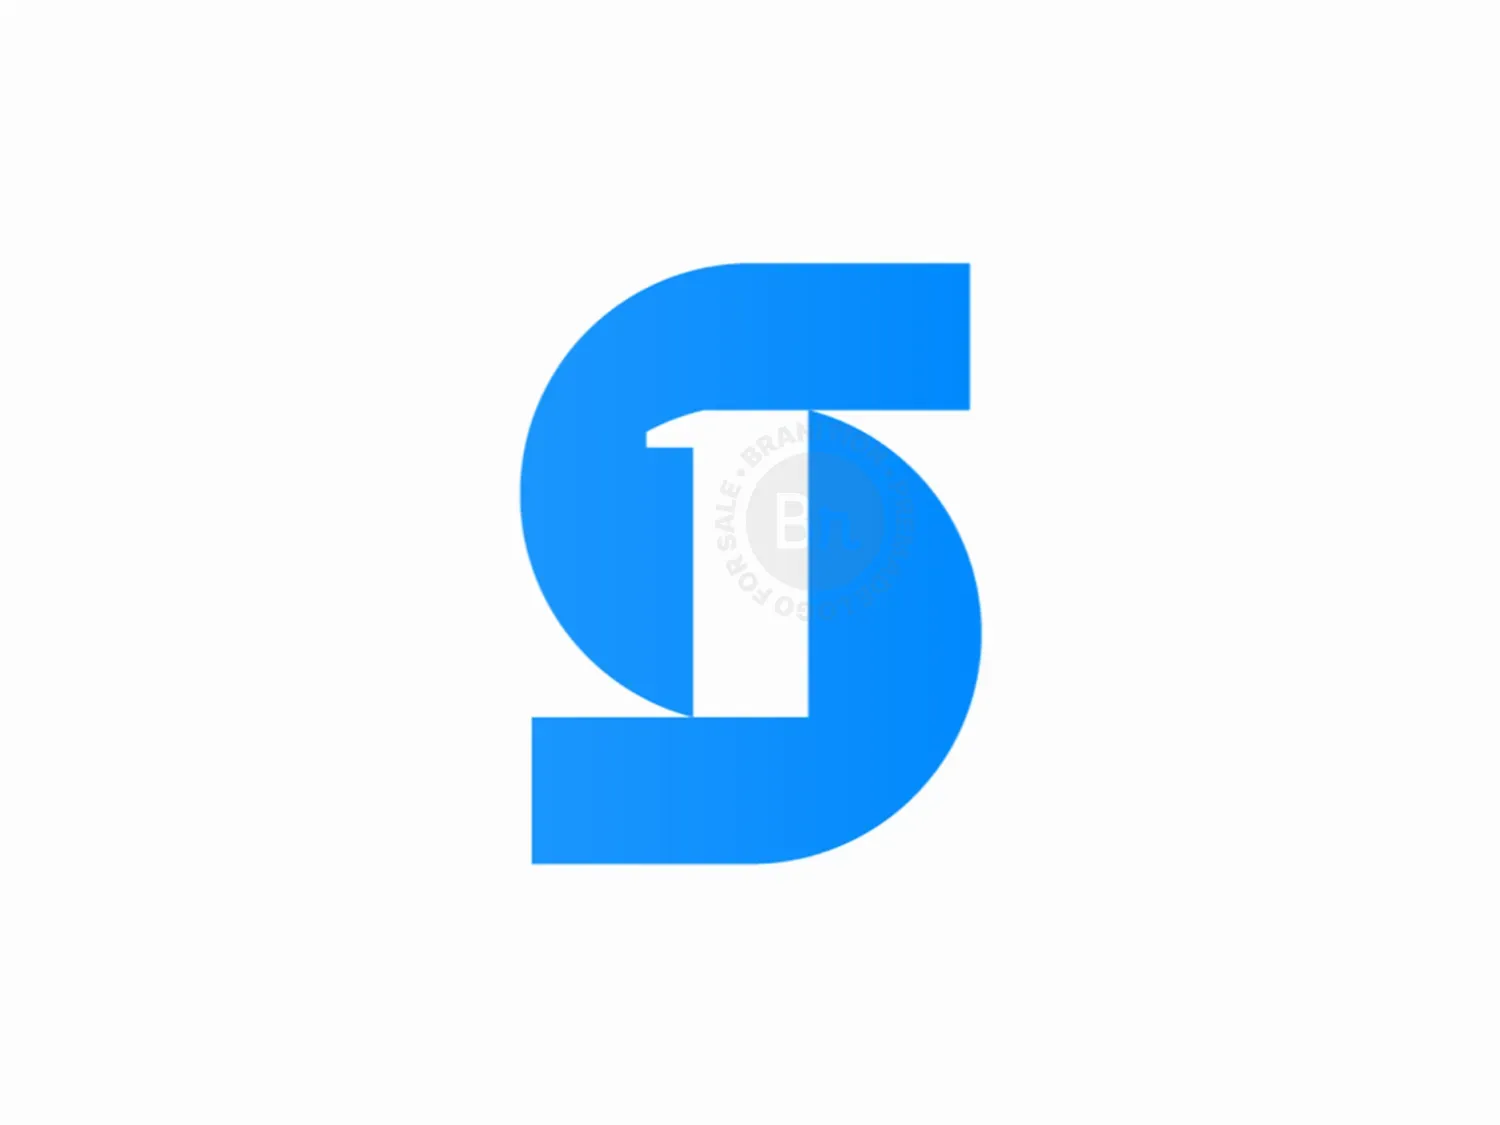 A letter logo lettermark monogram finance type Vector Image